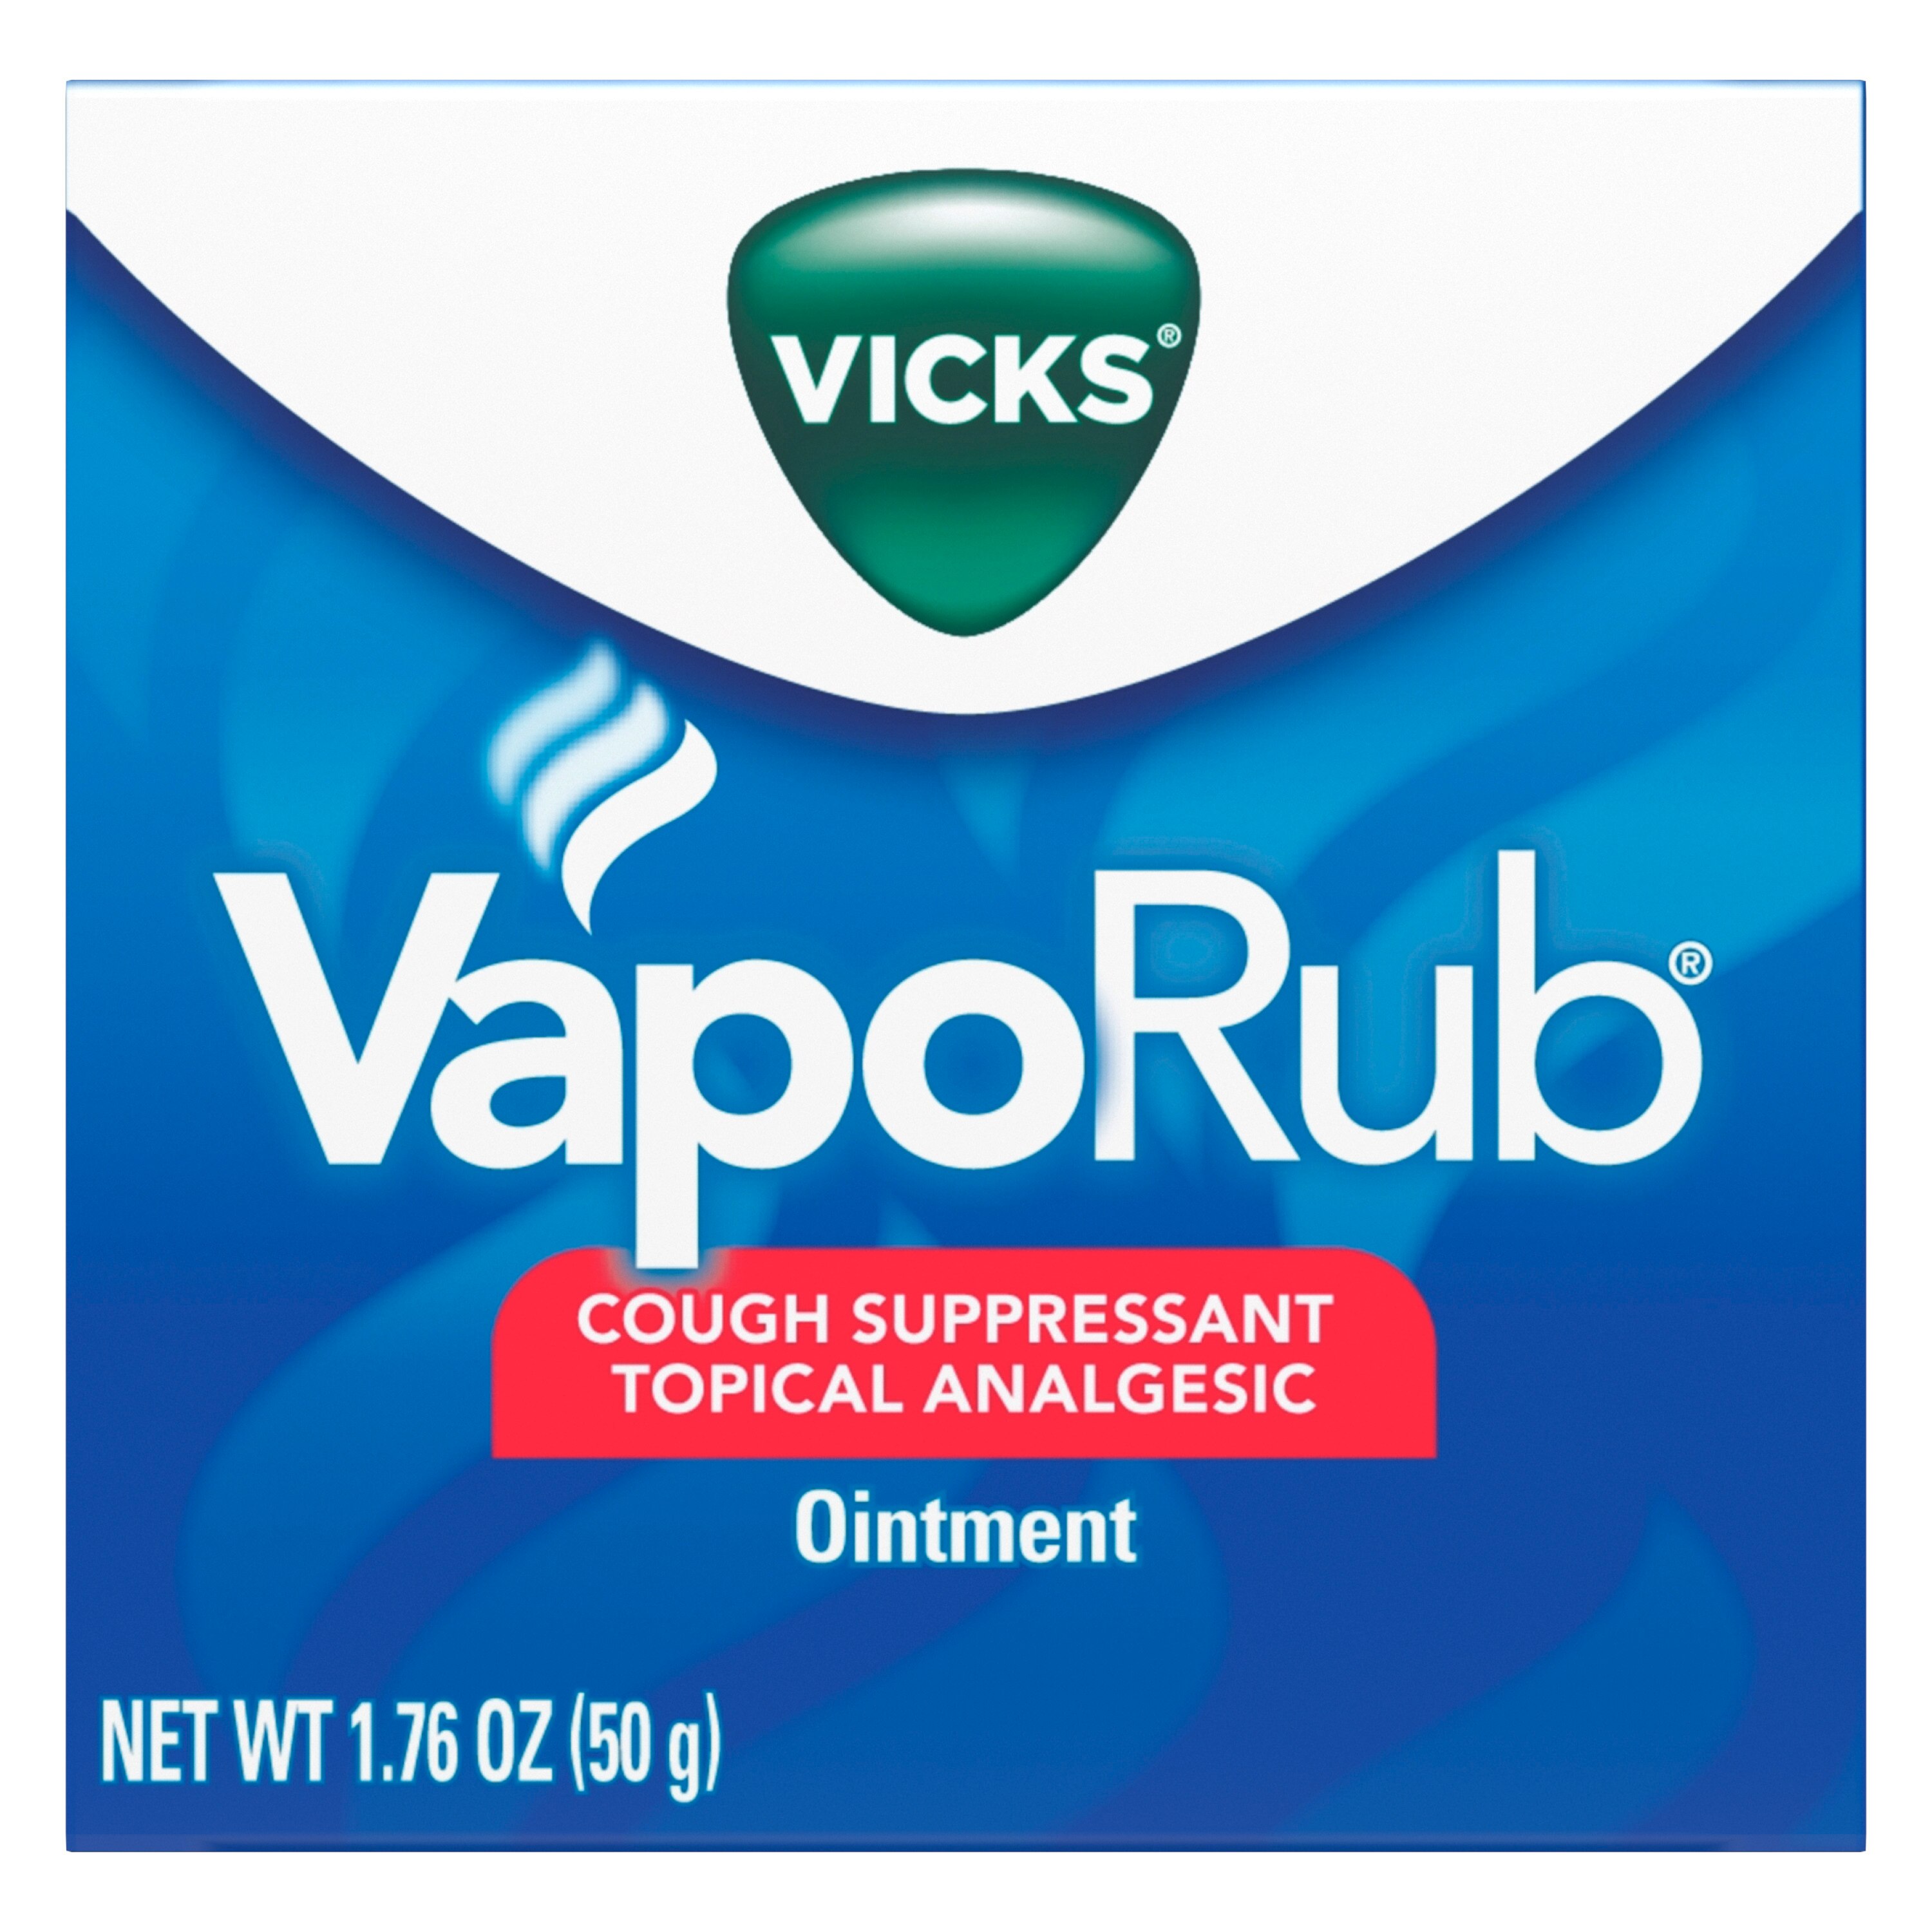 Vicks VapoRub Original - Pomada analgésica de uso tópico para suprimir la tos, ideal para el alivio de síntomas del resfriado y dolores